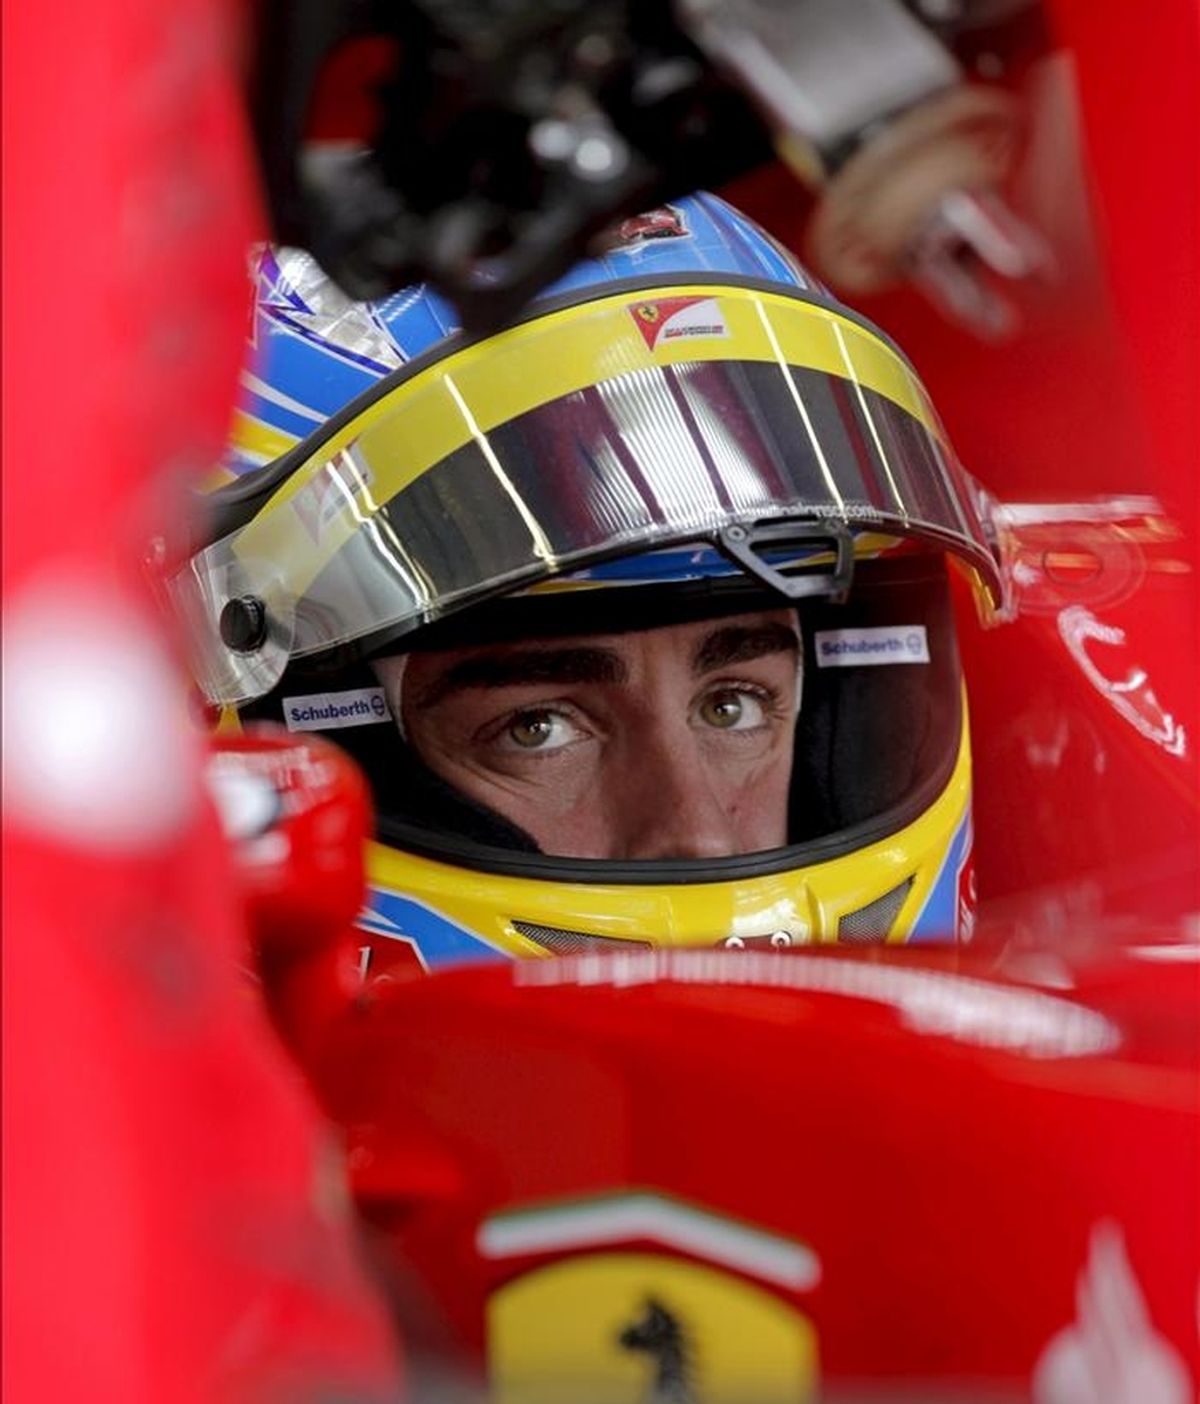 El piloto español Fernando Alonso, de la escudería Ferrari, en su monoplaza durante la segunda sesión de entrenamientos libres para el Gran Premio de Turquía de Fórmula Uno en el circuito de Estambul. La carrera se disputará el próximo 8 de mayo. EFE